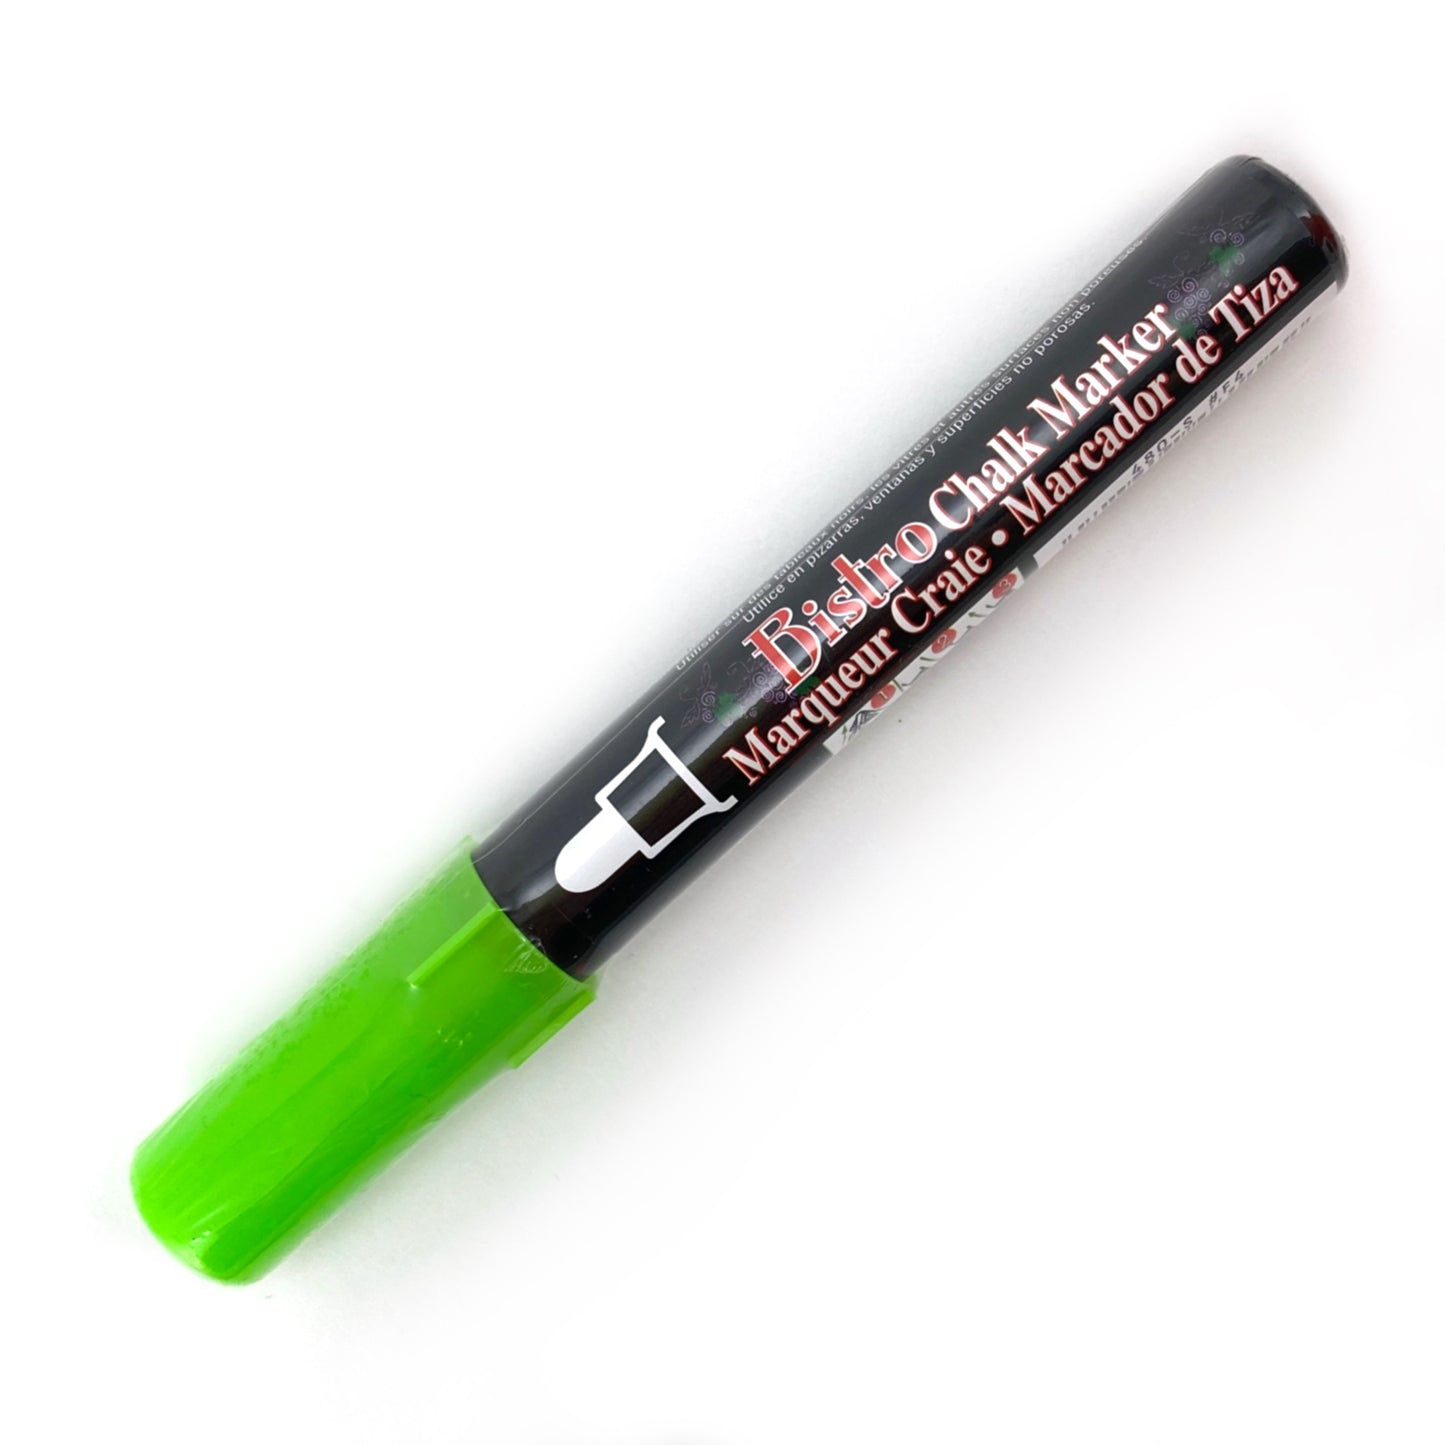 Bistro Chalk Marker - Broad (6mm) - Fluorescent Green by Marvy Uchida - K. A. Artist Shop